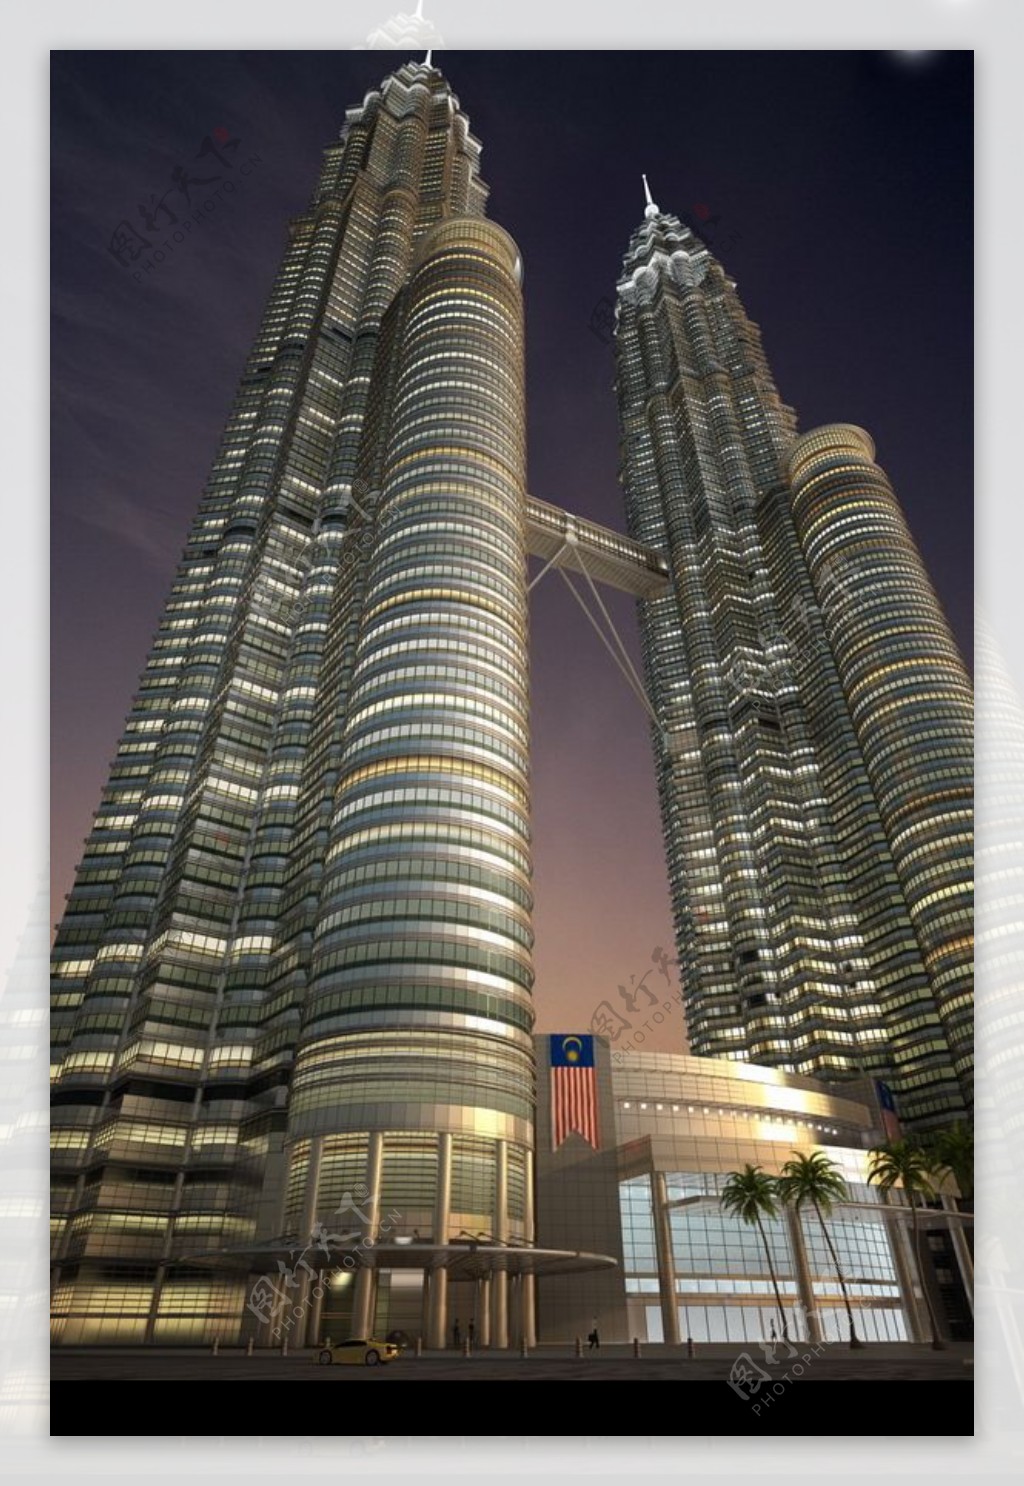 马来西亚吉隆坡双子星座大厦图片